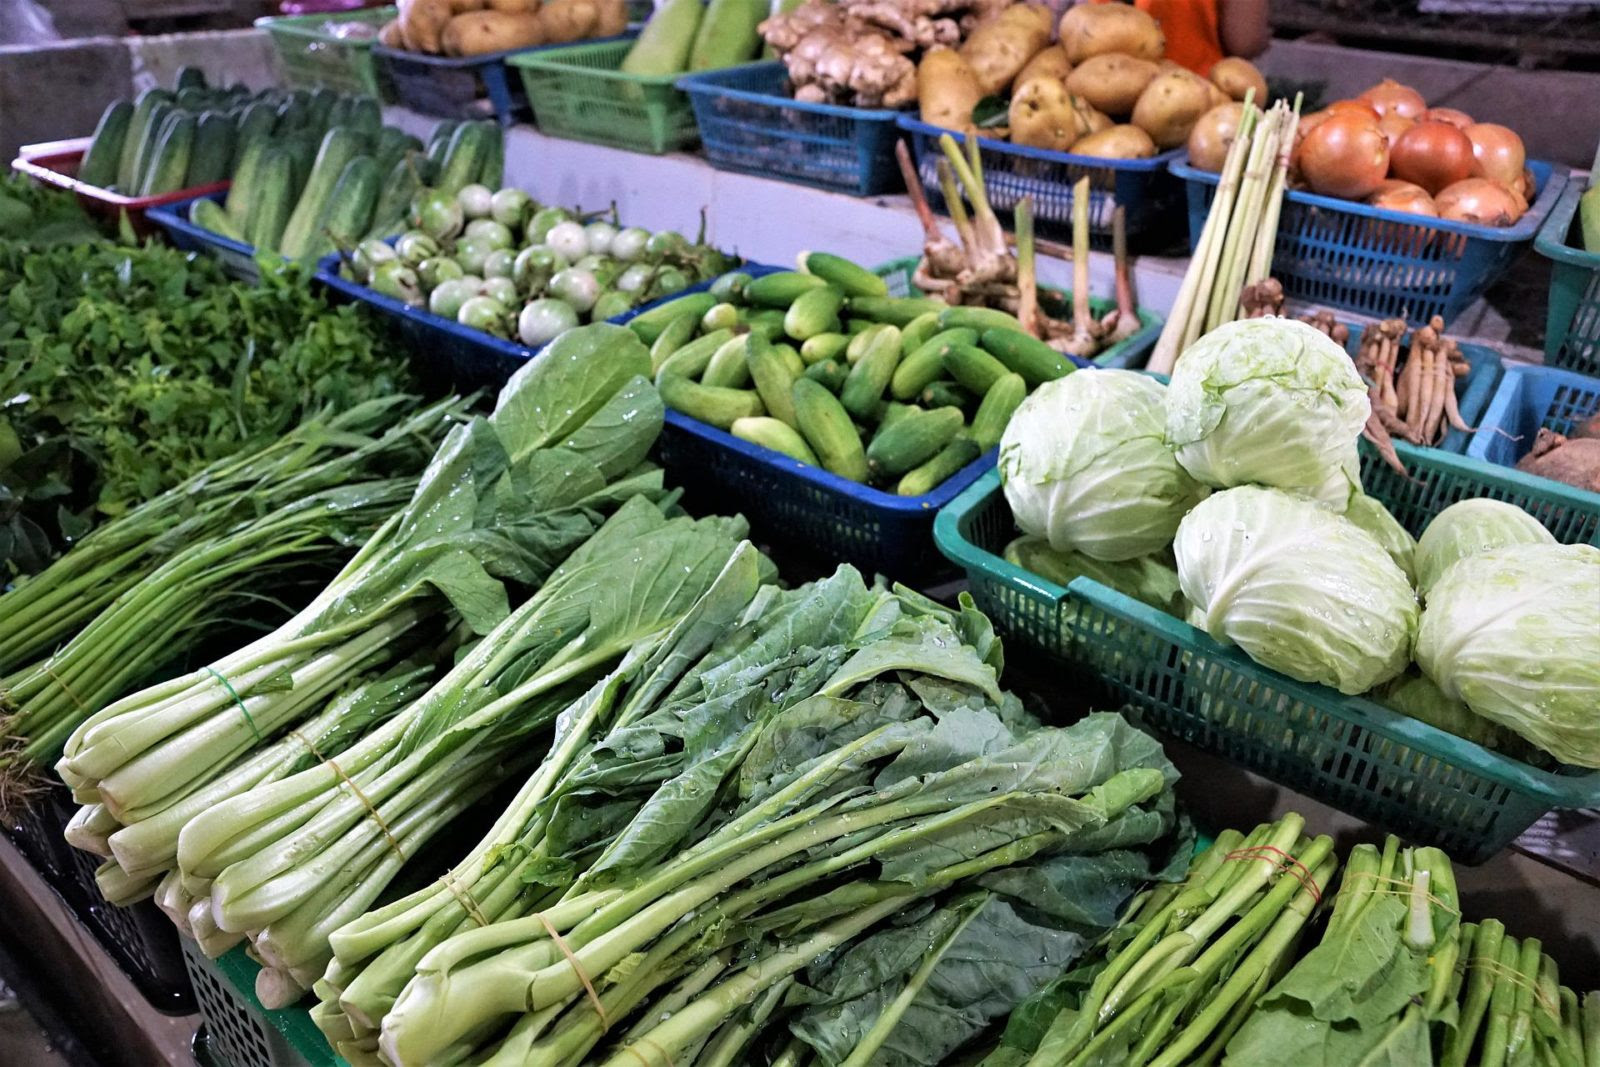 Verduras e legumes são expostos em cesta em barraca de feira, como alface, alho, pepino etc